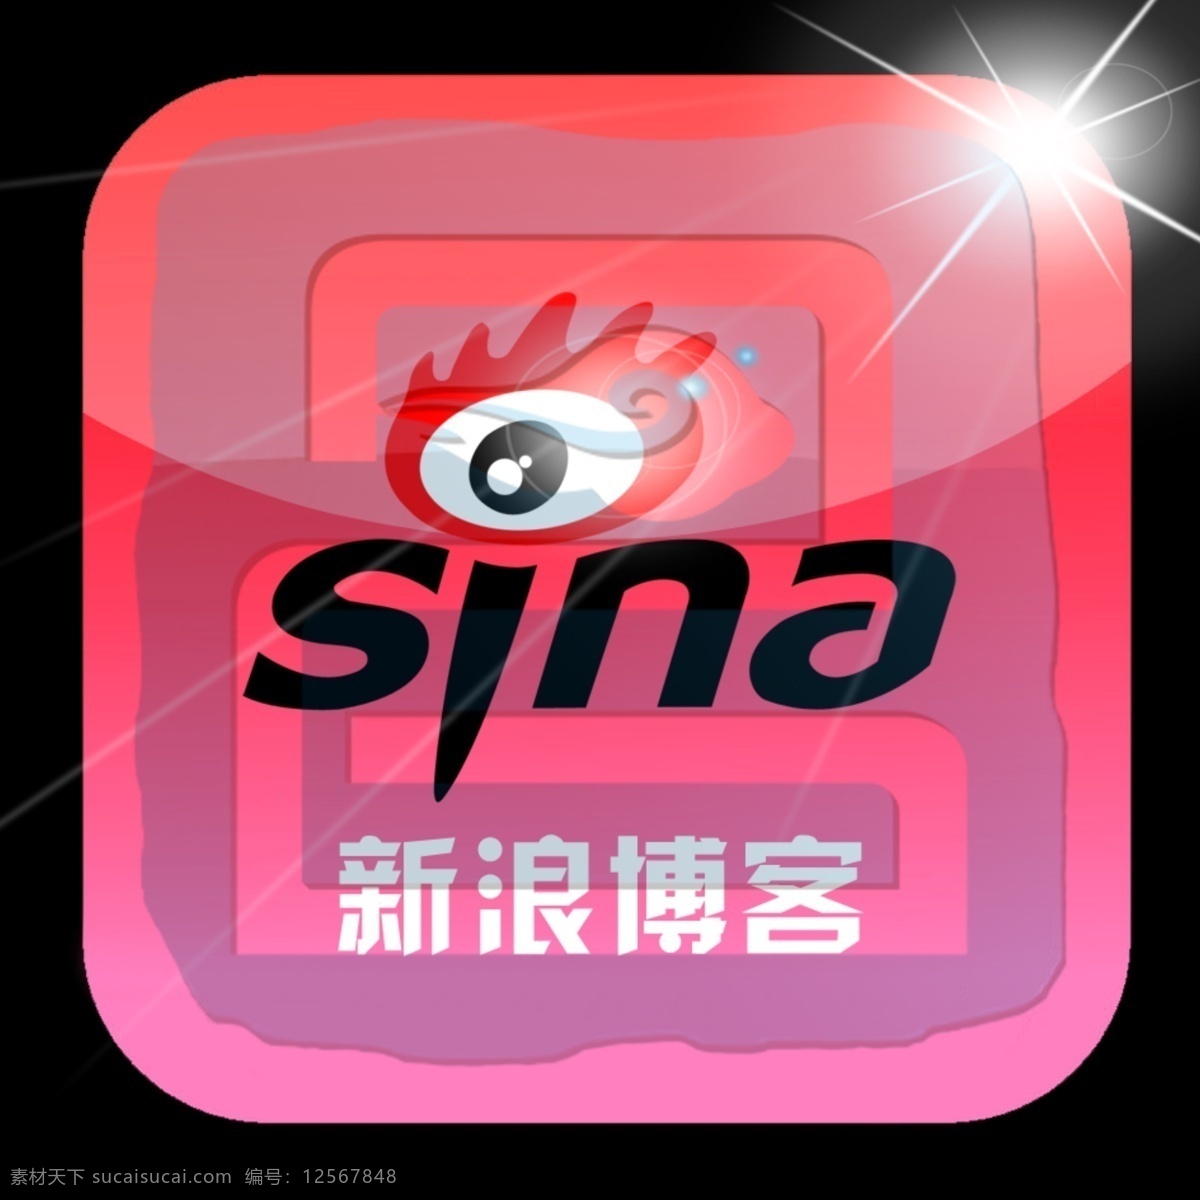 新浪博客 sina logo 图标 新浪 博客 光 星光 标志设计 广告设计模板 源文件